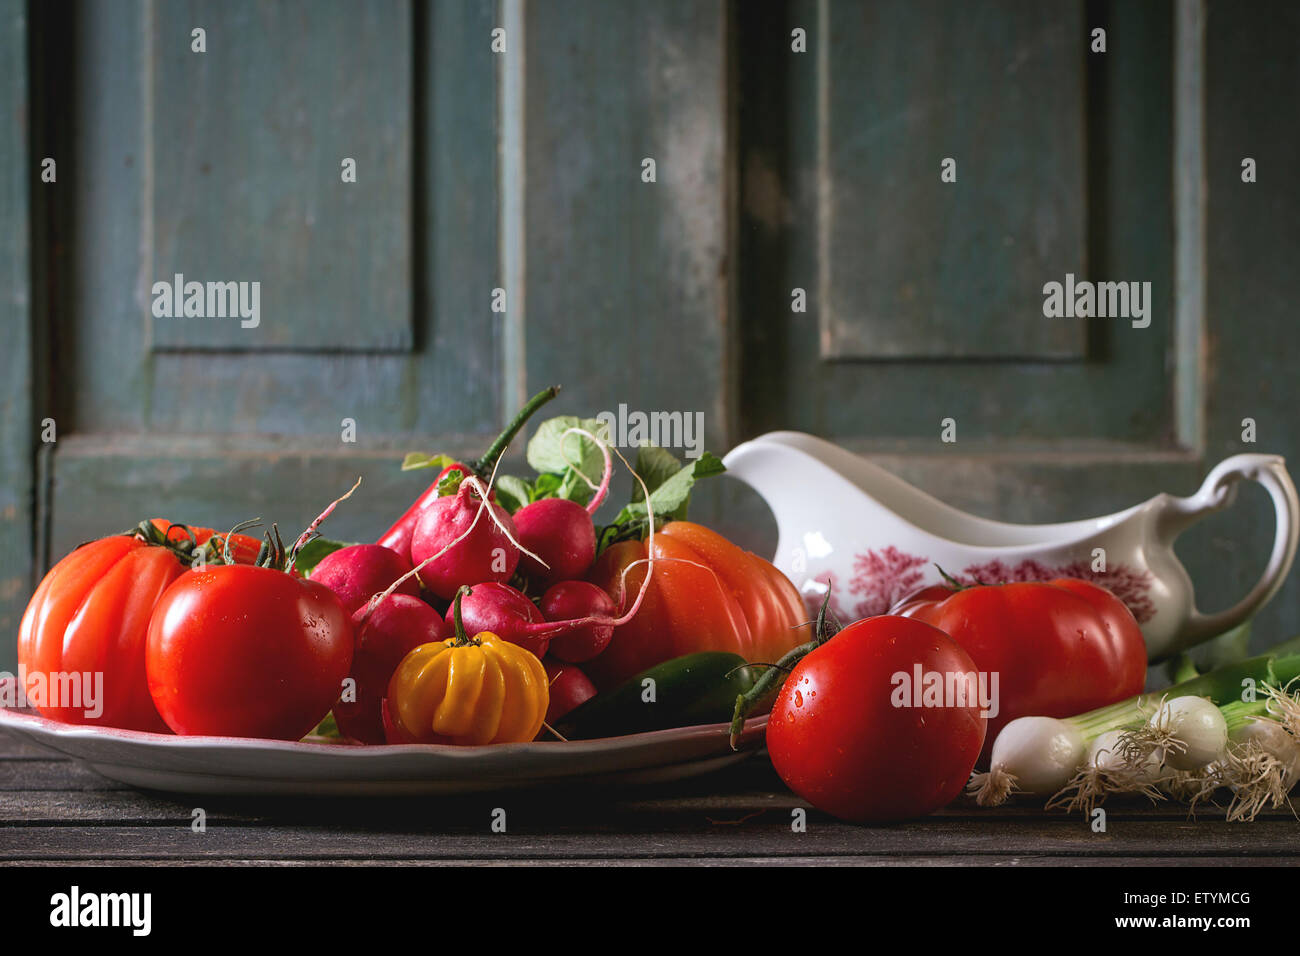 Haufen von Frischgemüse reif bunte Tomaten, Chilischoten, Frühlingszwiebeln und Bündel Radieschen auf Vintage Platte und Porzellan g Stockfoto